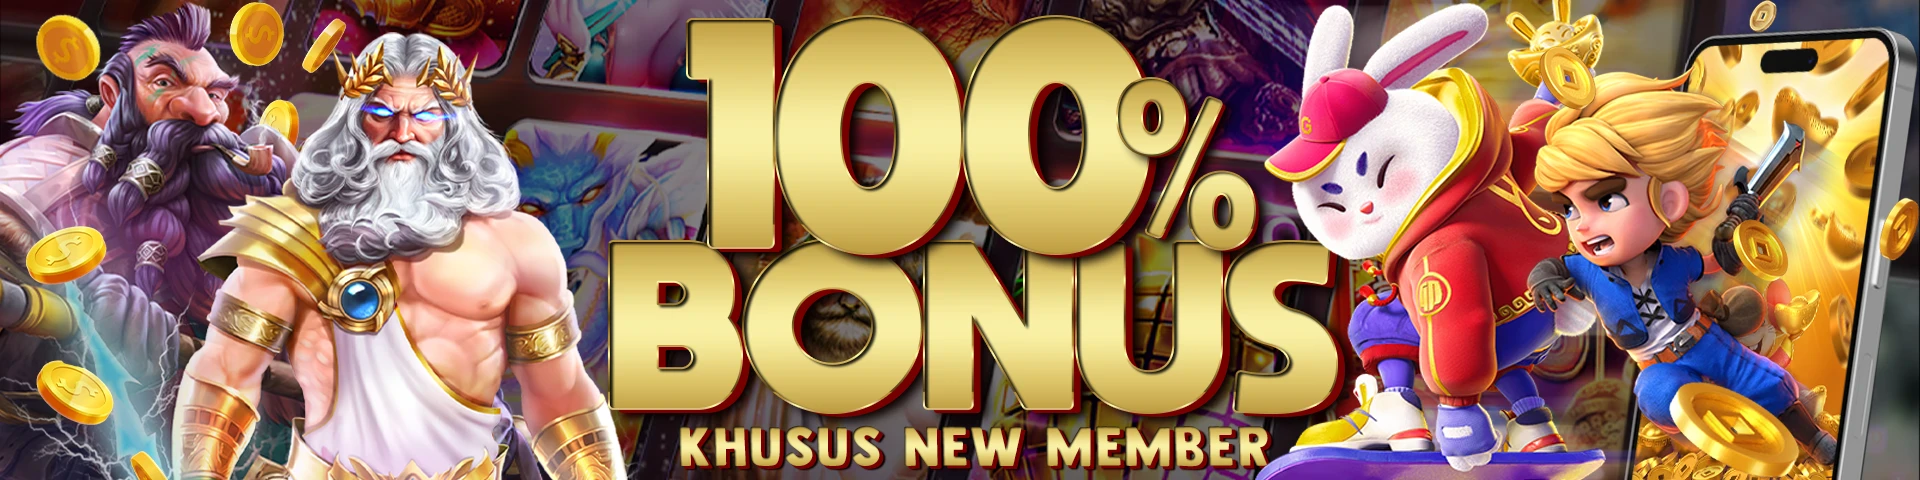 Bonus 100% Khusus New Member Slot Online